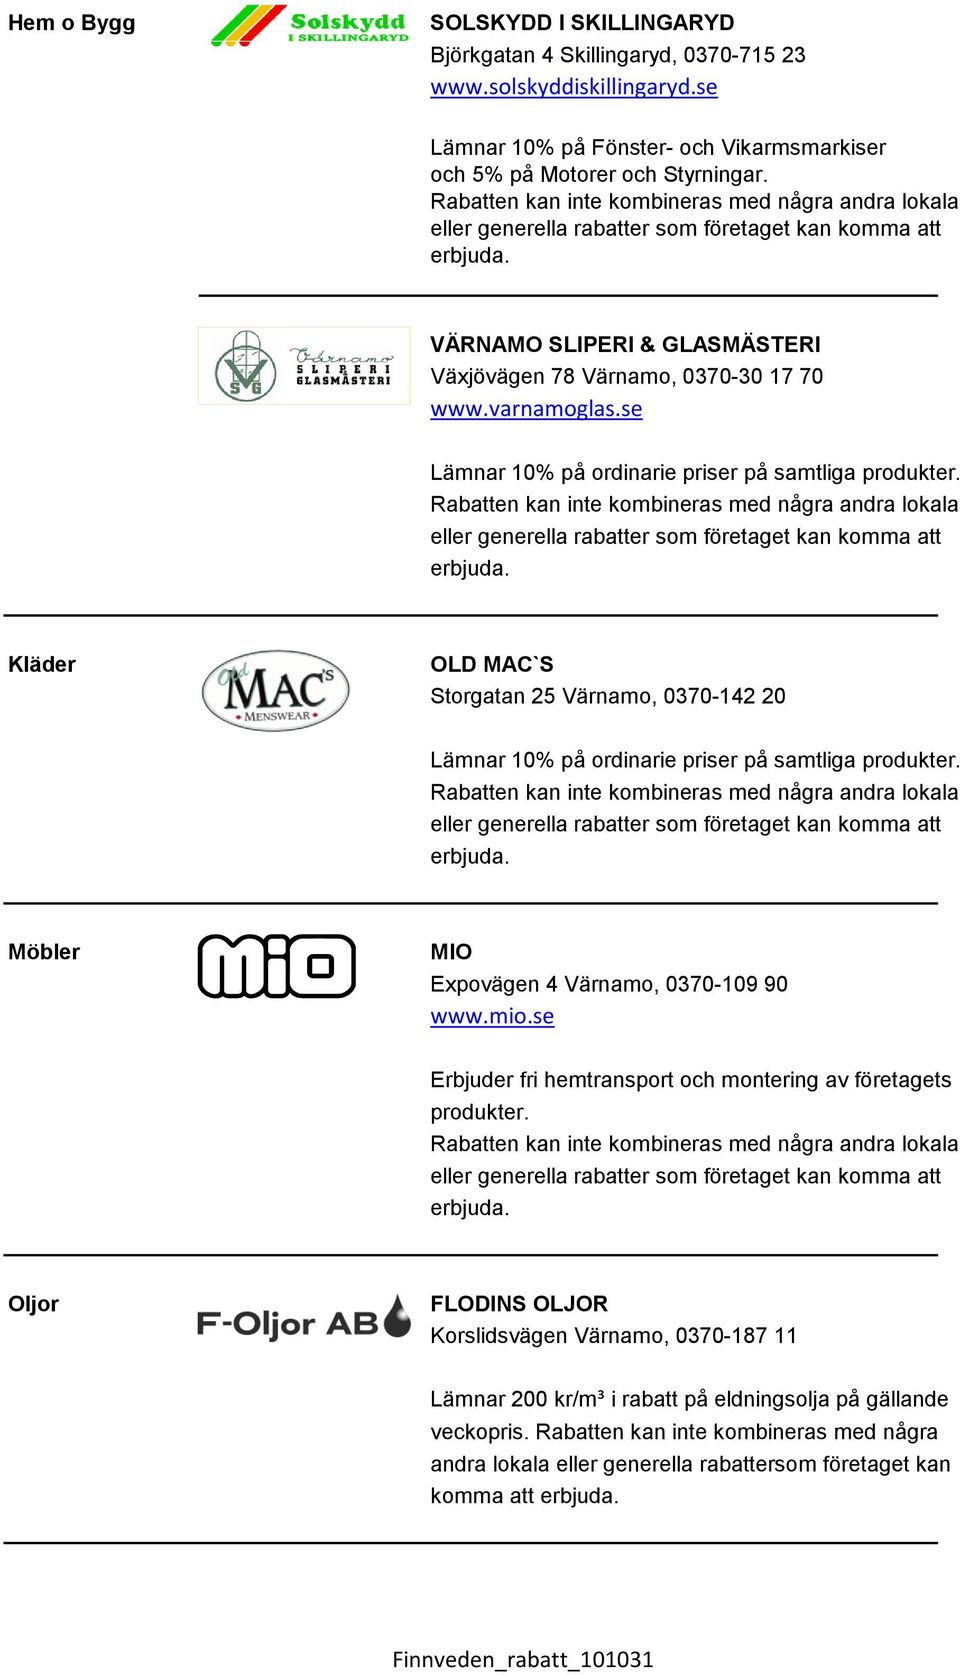 Kläder OLD MAC`S Storgatan 25 Värnamo, 0370-142 20 Lämnar 10% på ordinarie priser på samtliga produkter. Möbler MIO Expovägen 4 Värnamo, 0370-109 90 www.mio.